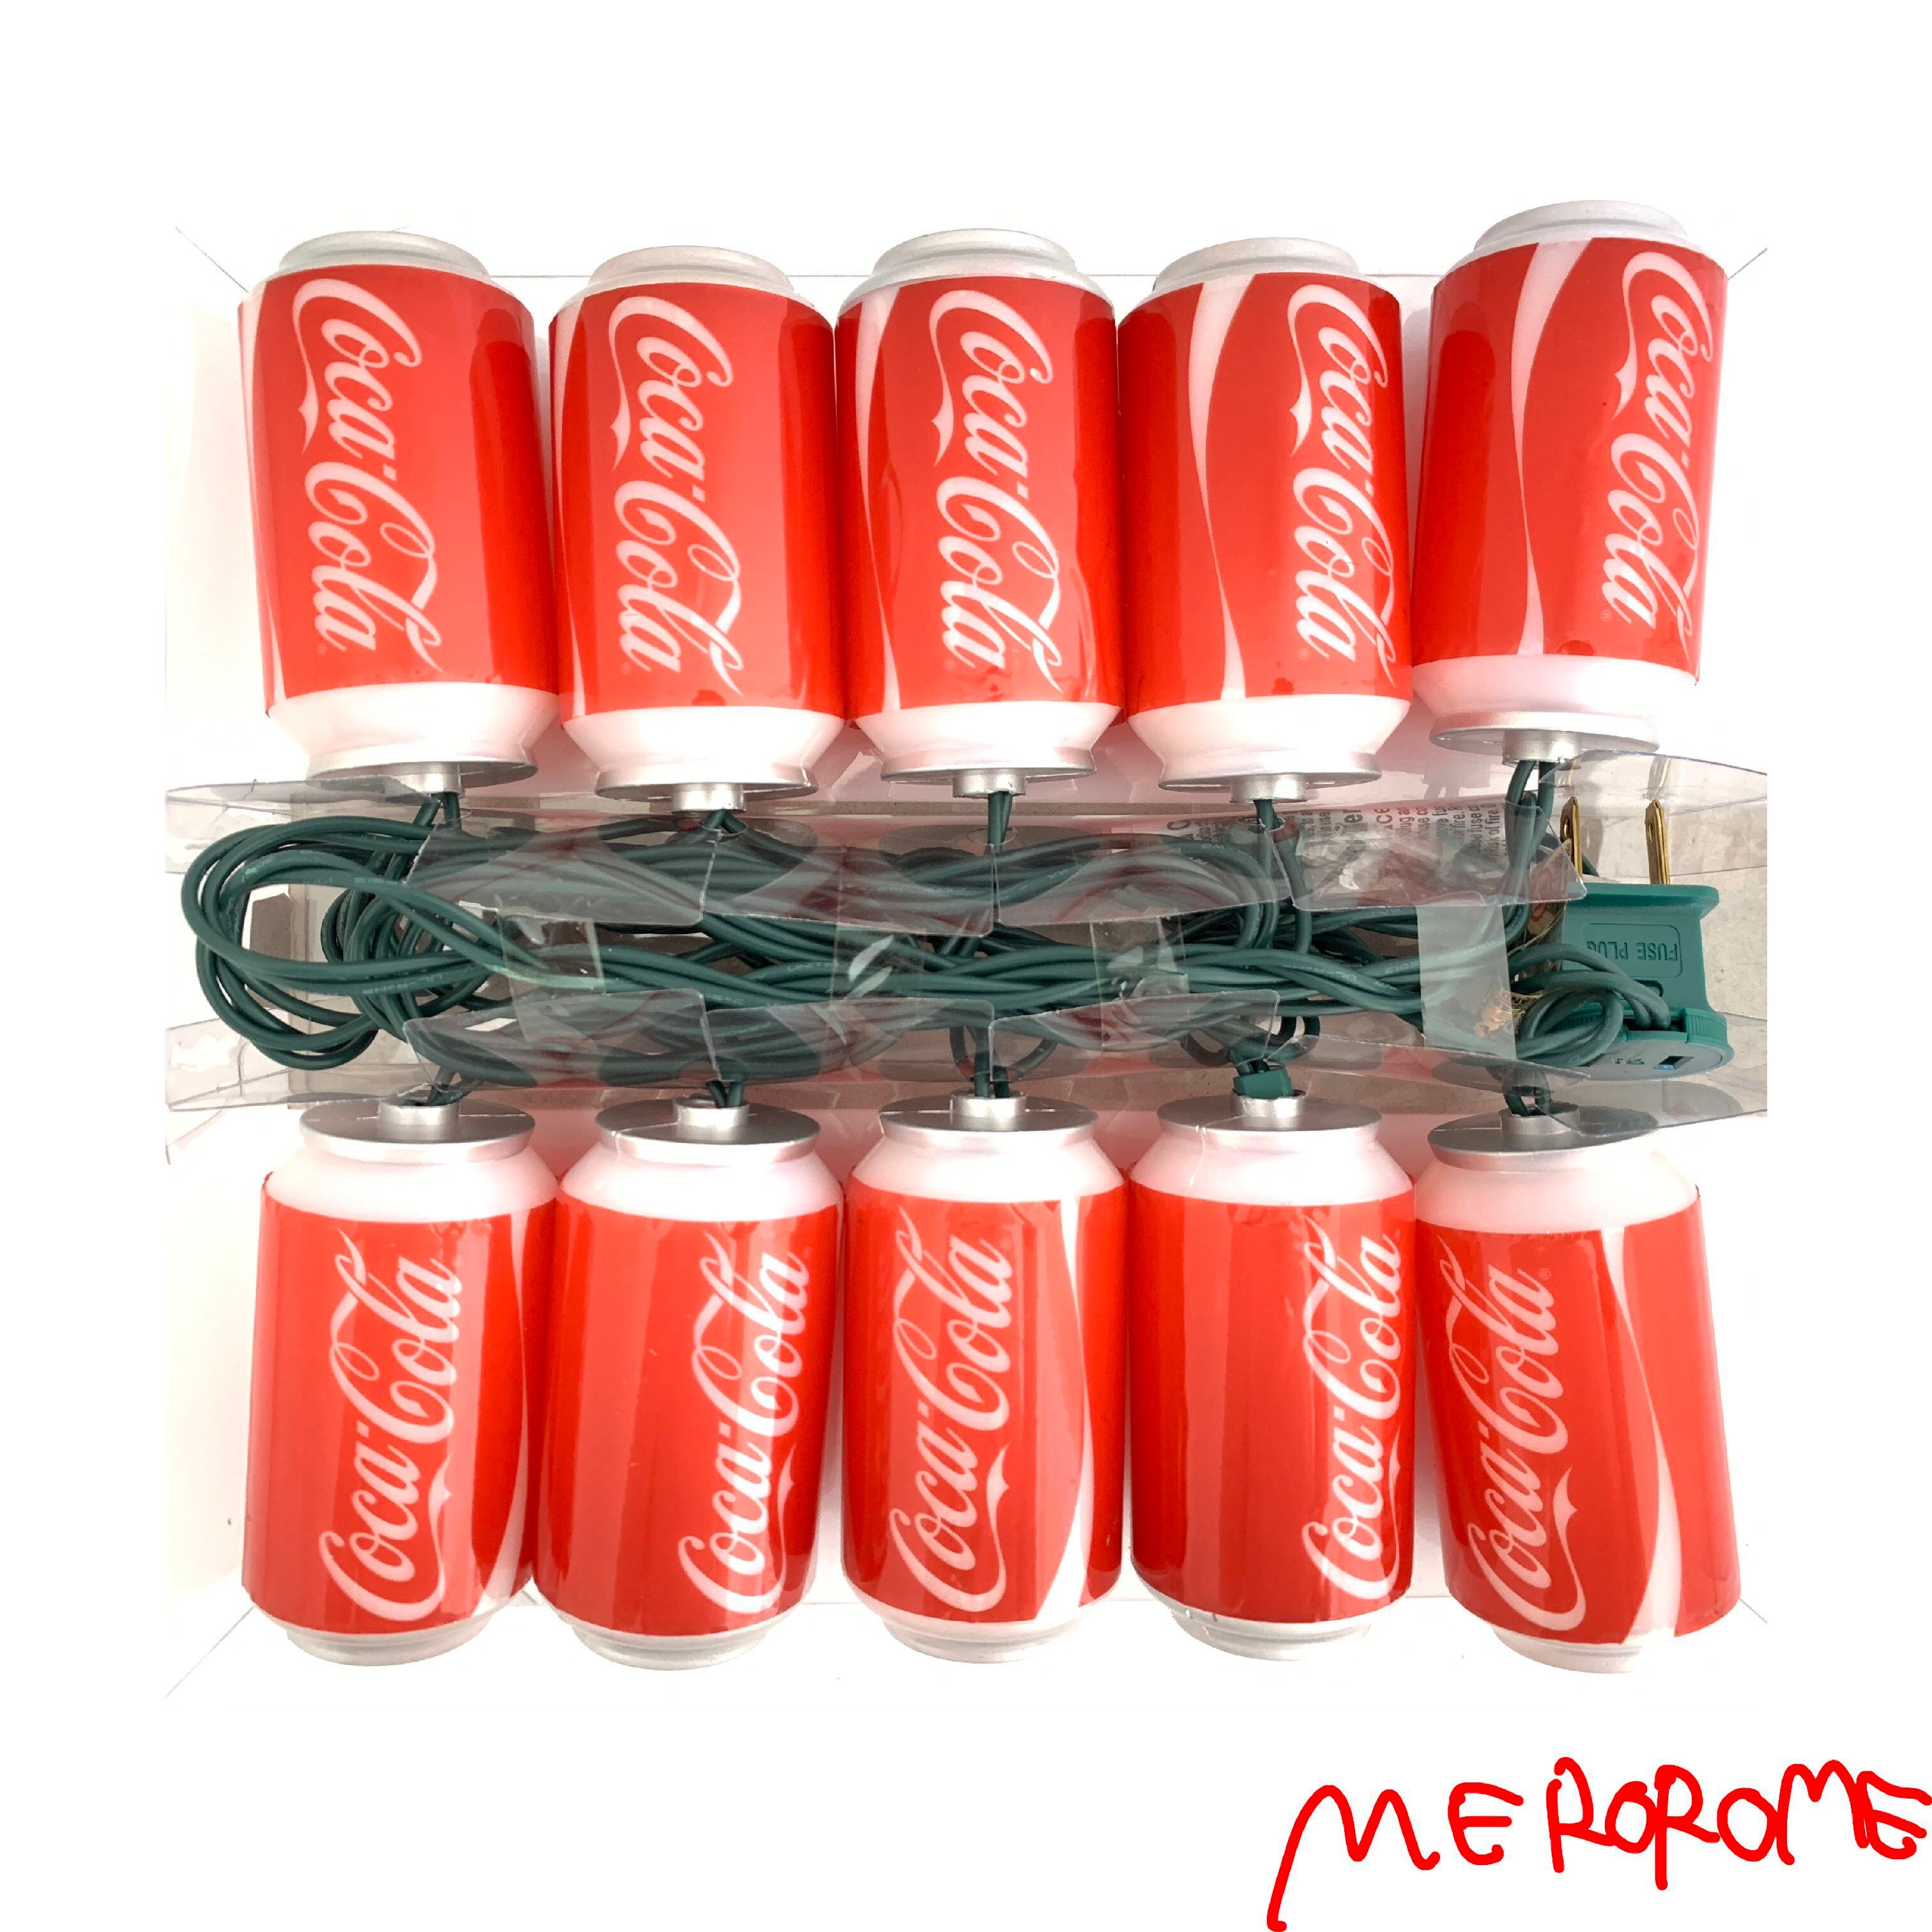 Coca-Cola Party Lights | コカ・コーラ パーティーライト | merorome